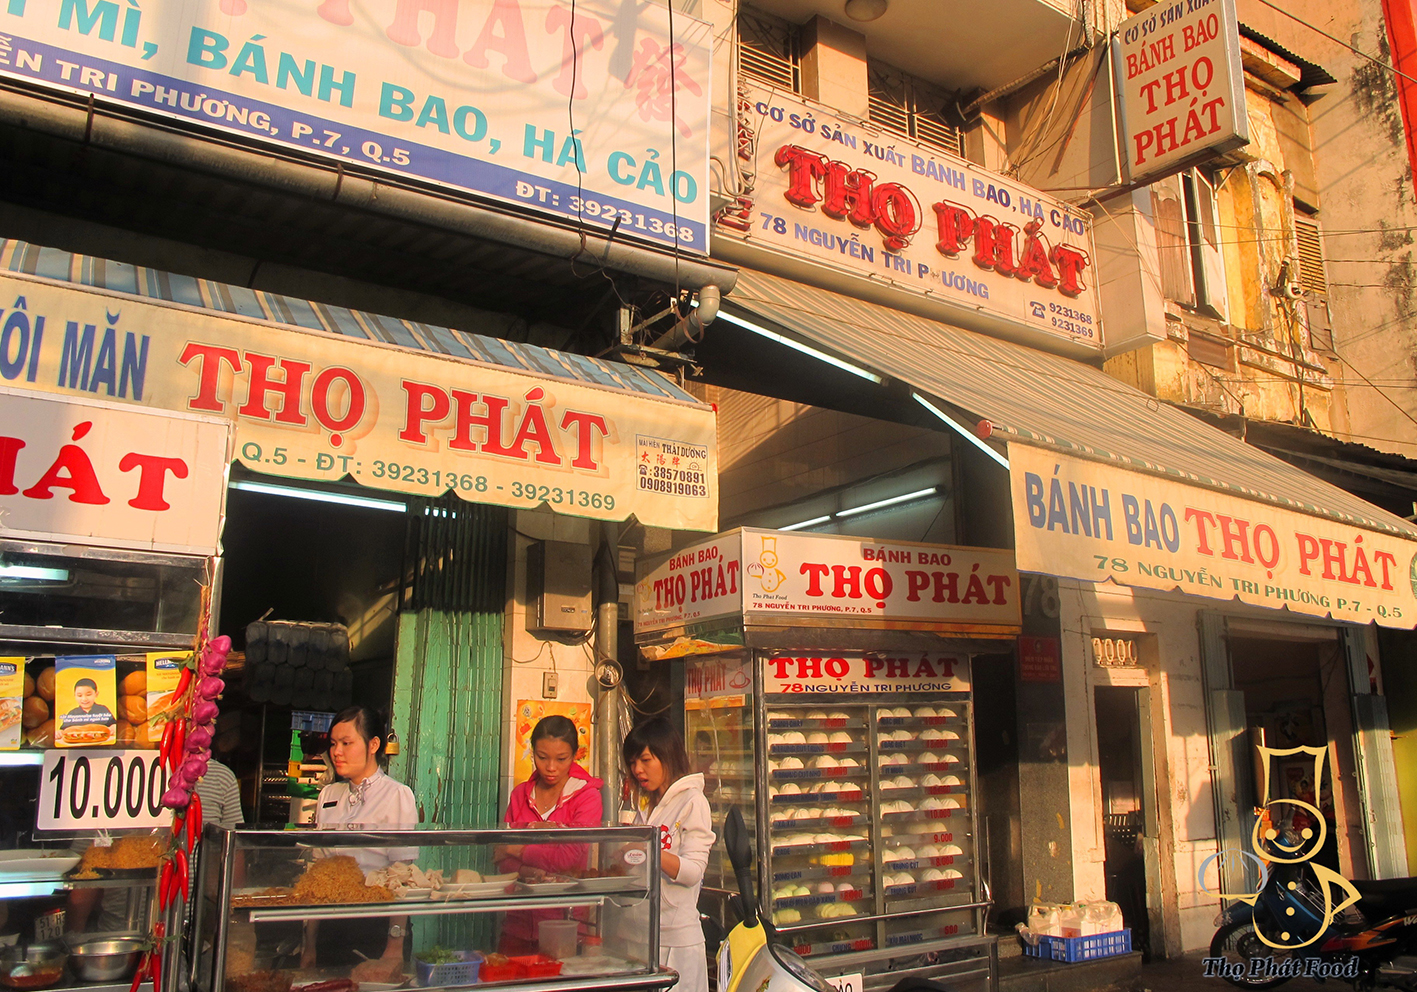 KIDO của anh em ông Trần Lệ Nguyên đã sở hữu thương hiệu bánh bao Thọ Phát gần 40 năm tuổi, lớn nhất Sài Gòn - Ảnh 1.